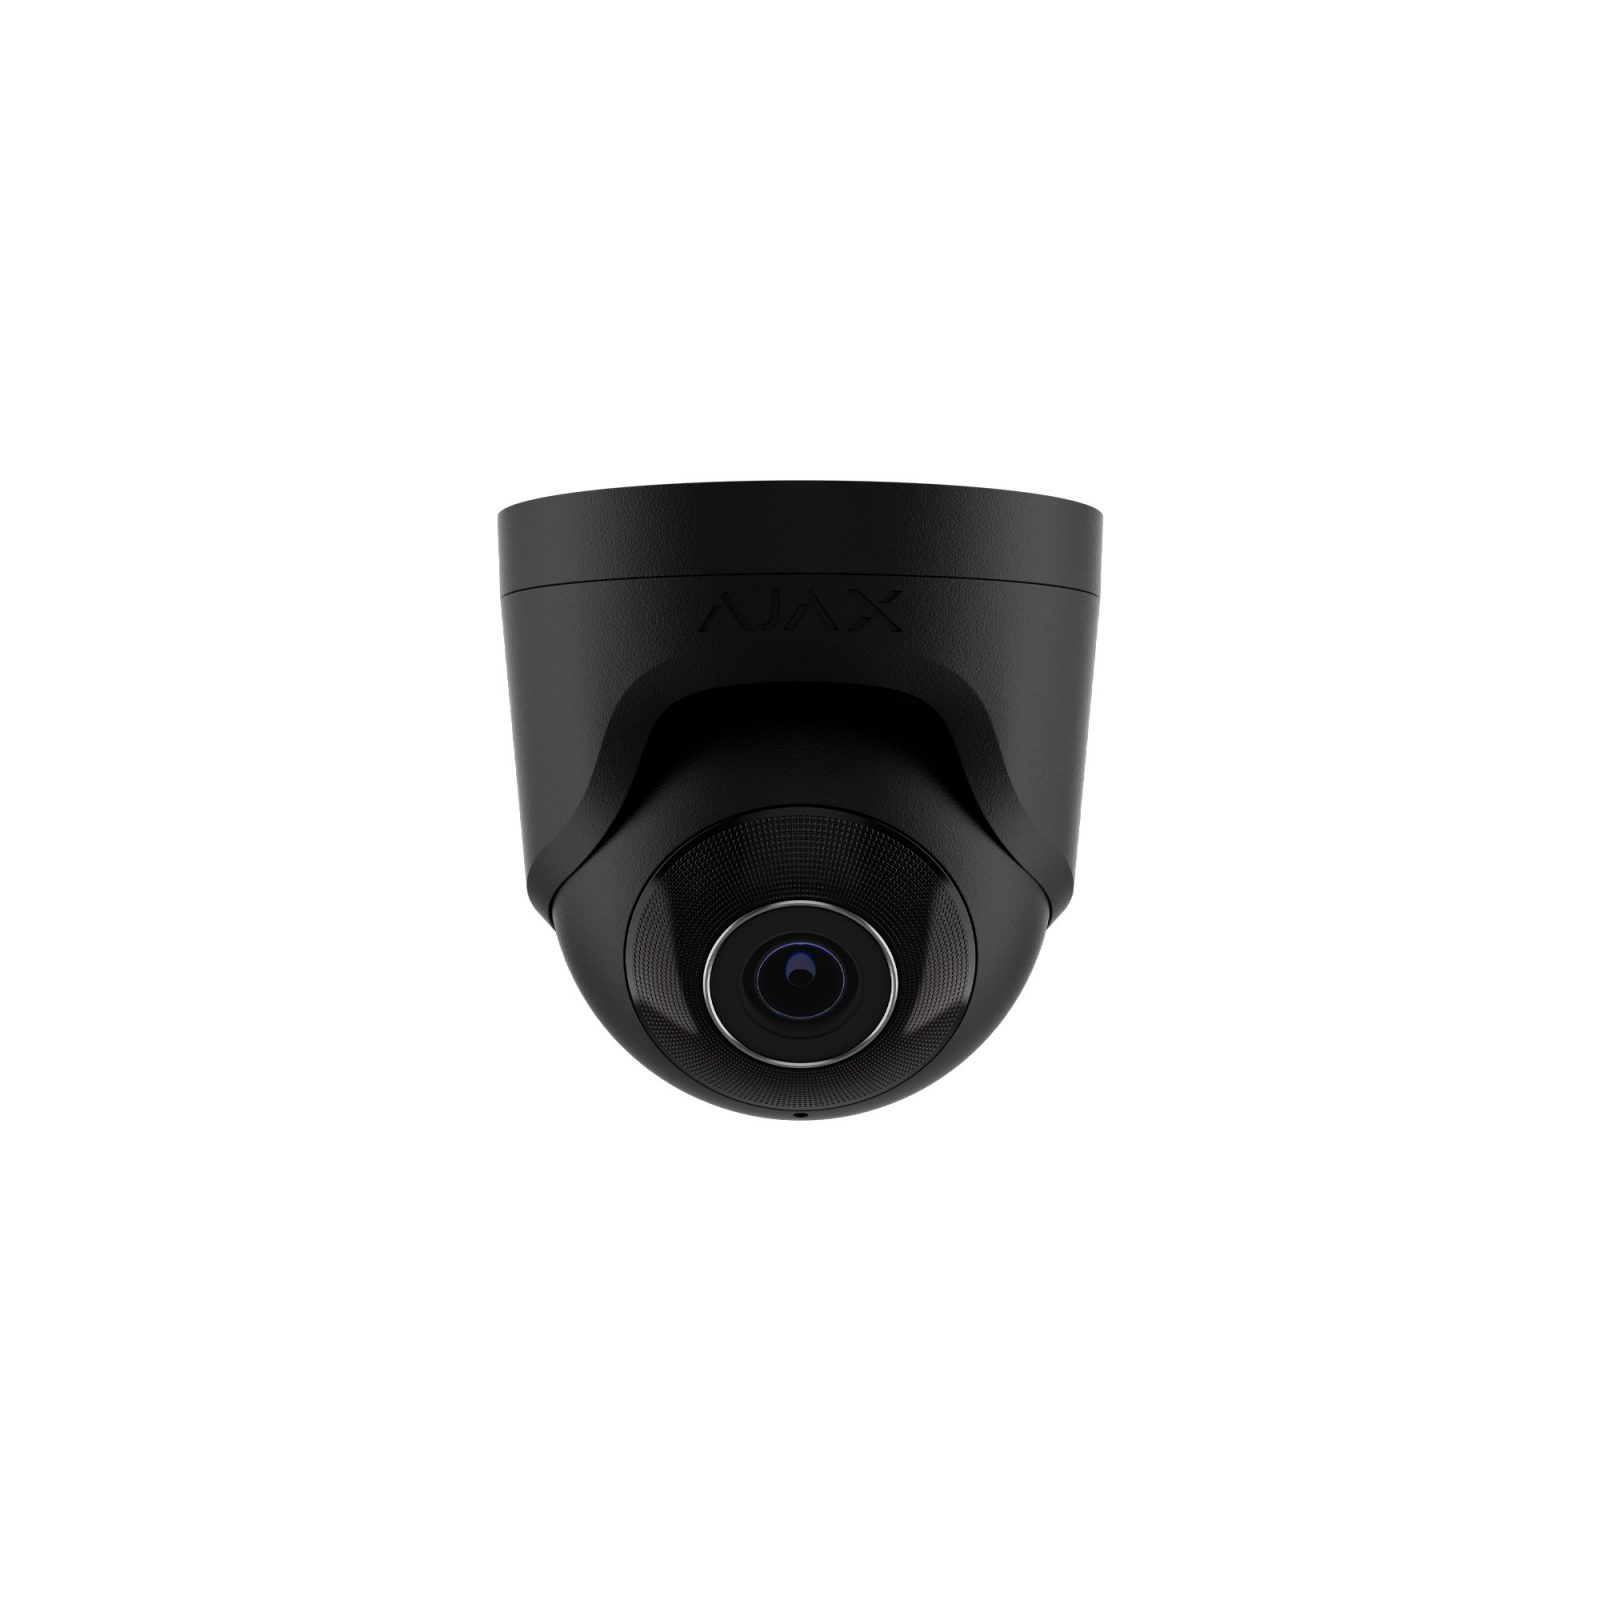 Камера видеонаблюдения Ajax TurretCam (8/4.0) white